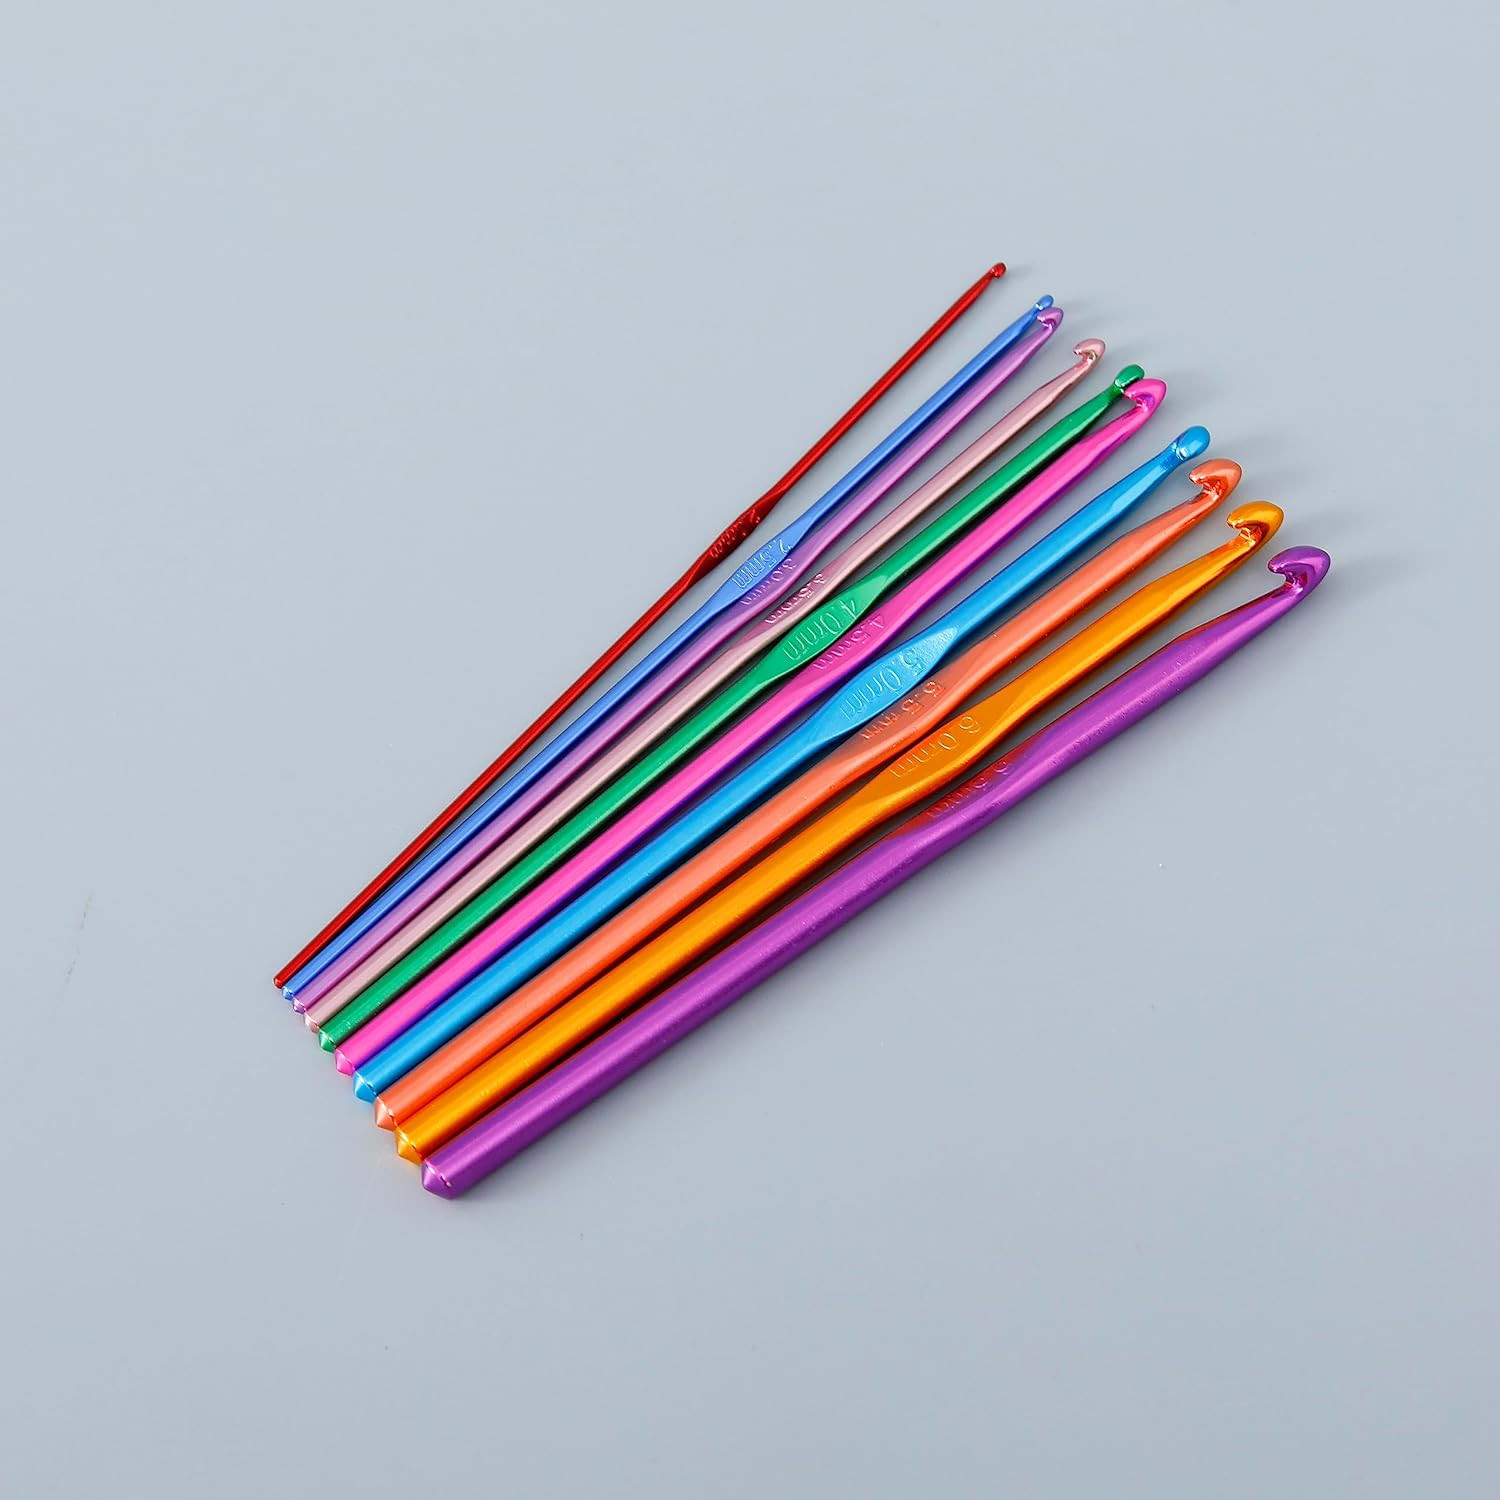 Kuber Industries Crochet Hook Needle Set With Case|Ergonomic Sewing Knitting Needle Kit (Black)